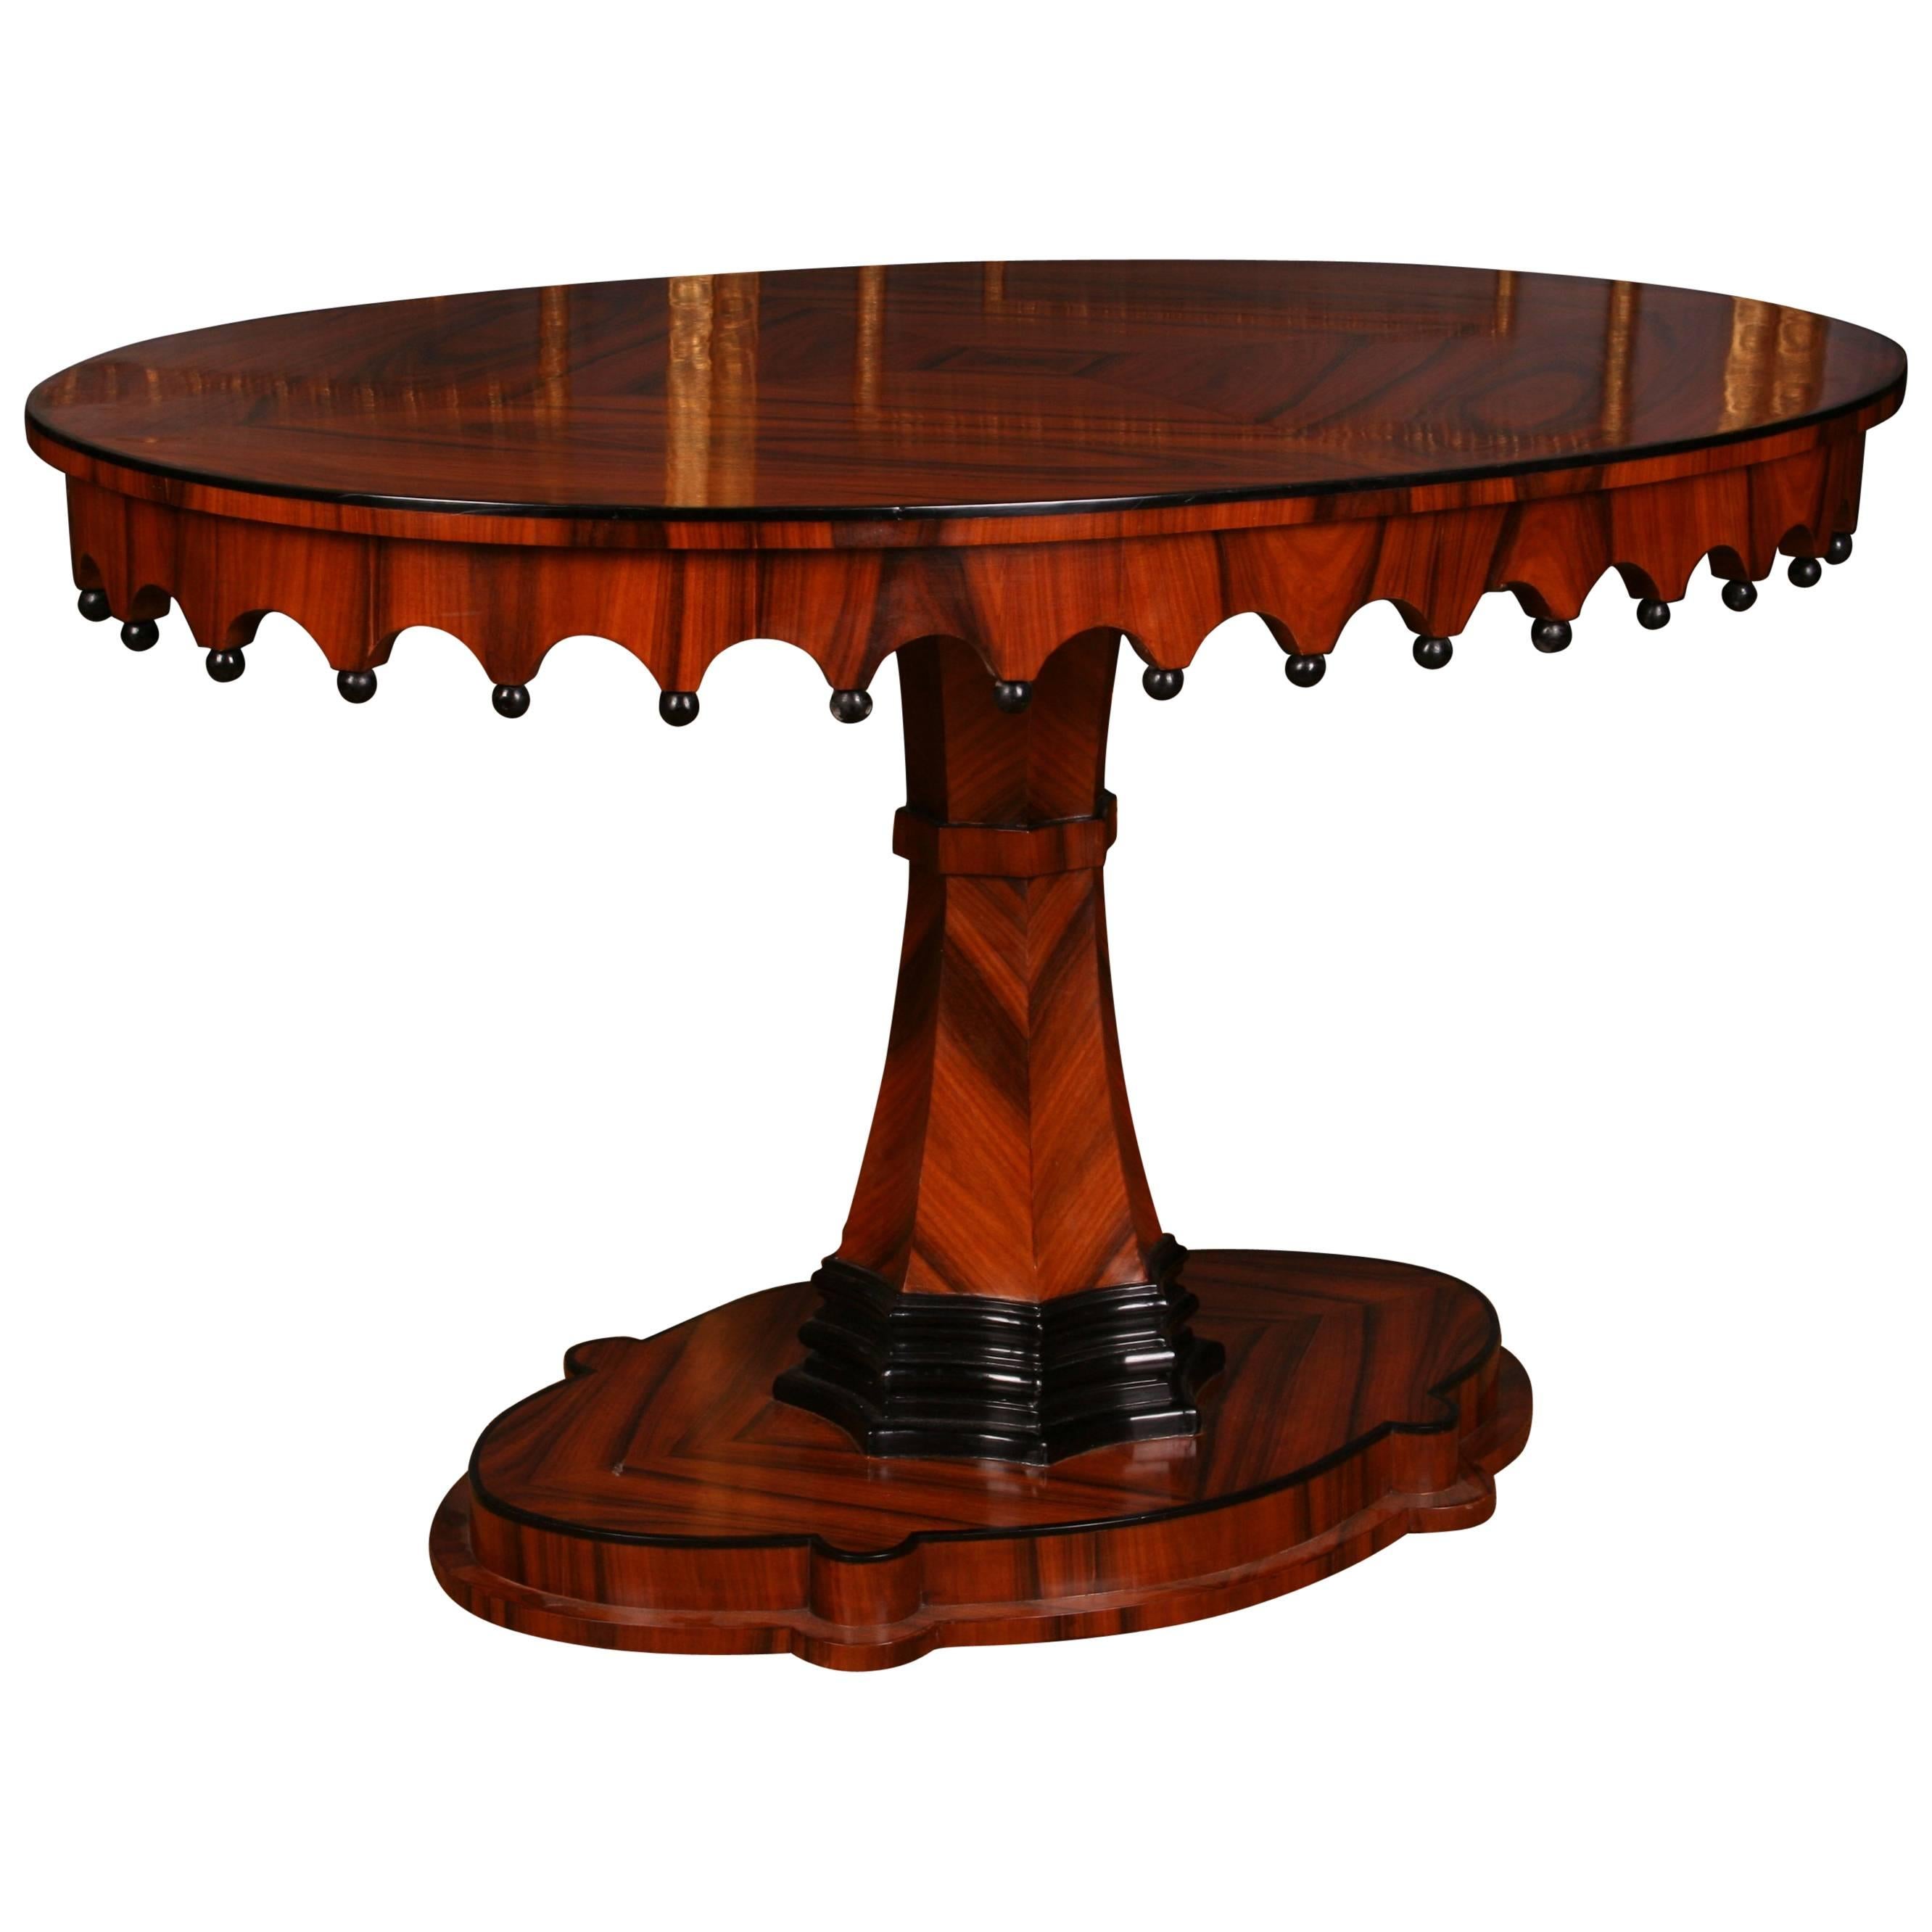 19th Century Elegant Oval Table in Biedermeier Style with exotic Rosewood Veneer